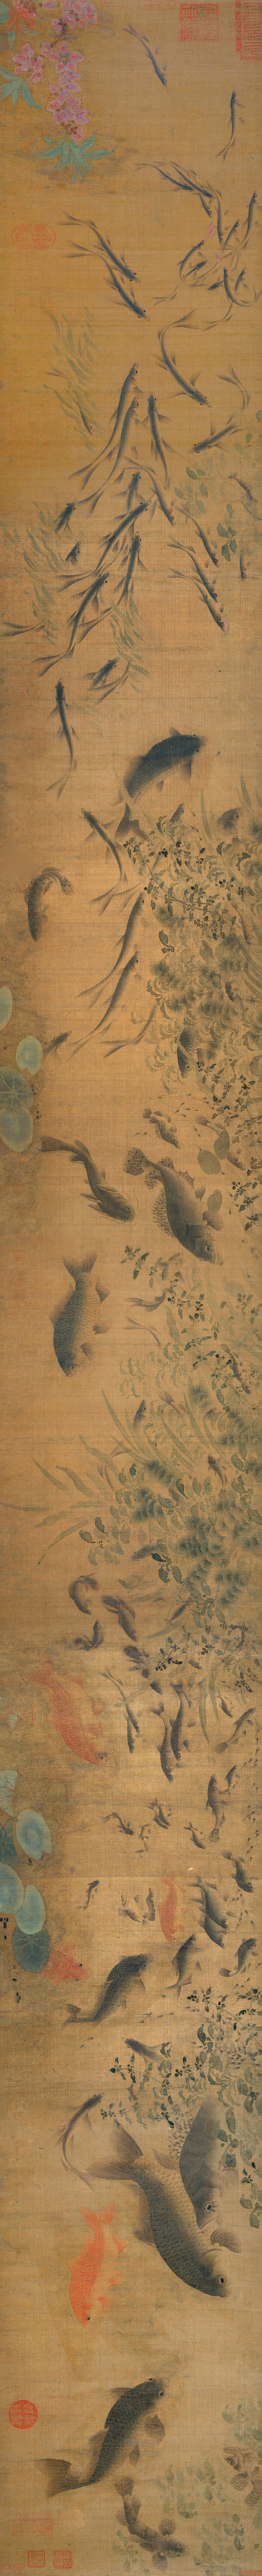 B5037003《群鱼戏瓣图卷》宋代画家刘寀高清作品 宋代-第1张